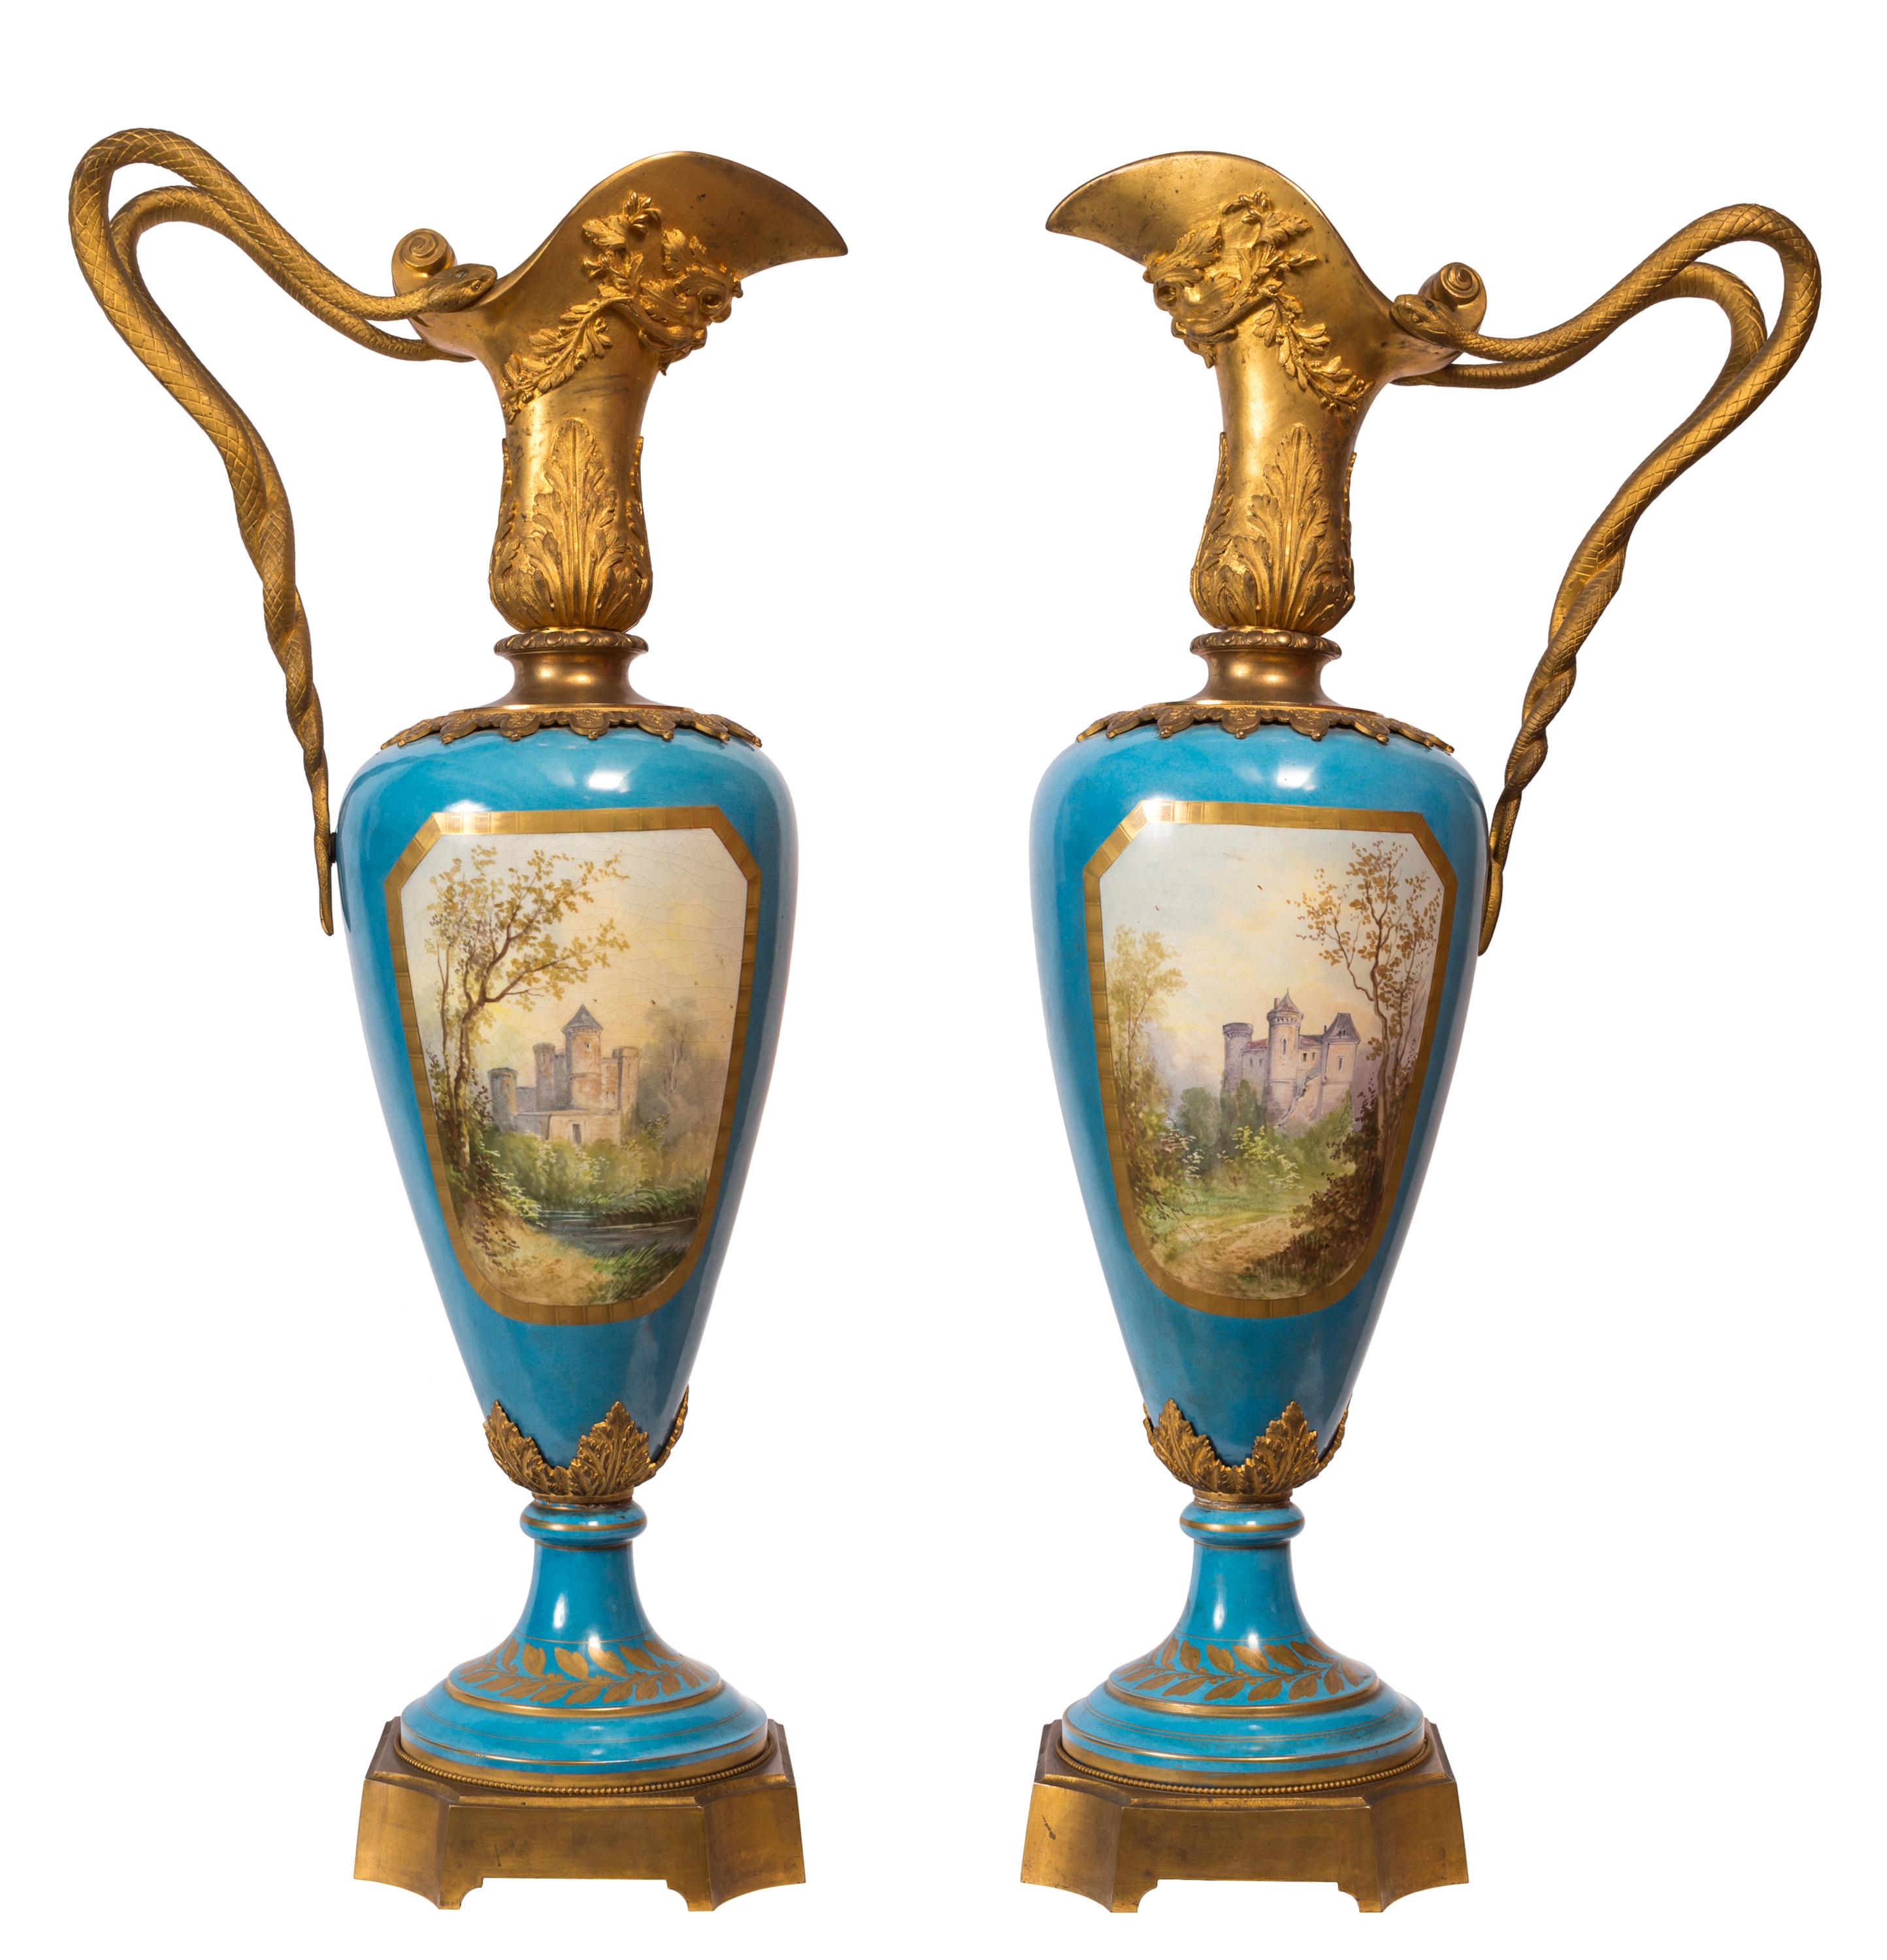 D'une taille impressionnante (1 mètre / 3,28 pieds), cette paire d'aiguières / vases en porcelaine de style Sèvres du XIXe siècle présente un haut niveau de détail et de qualité, tant dans le travail du métal que dans la décoration peinte à la main.